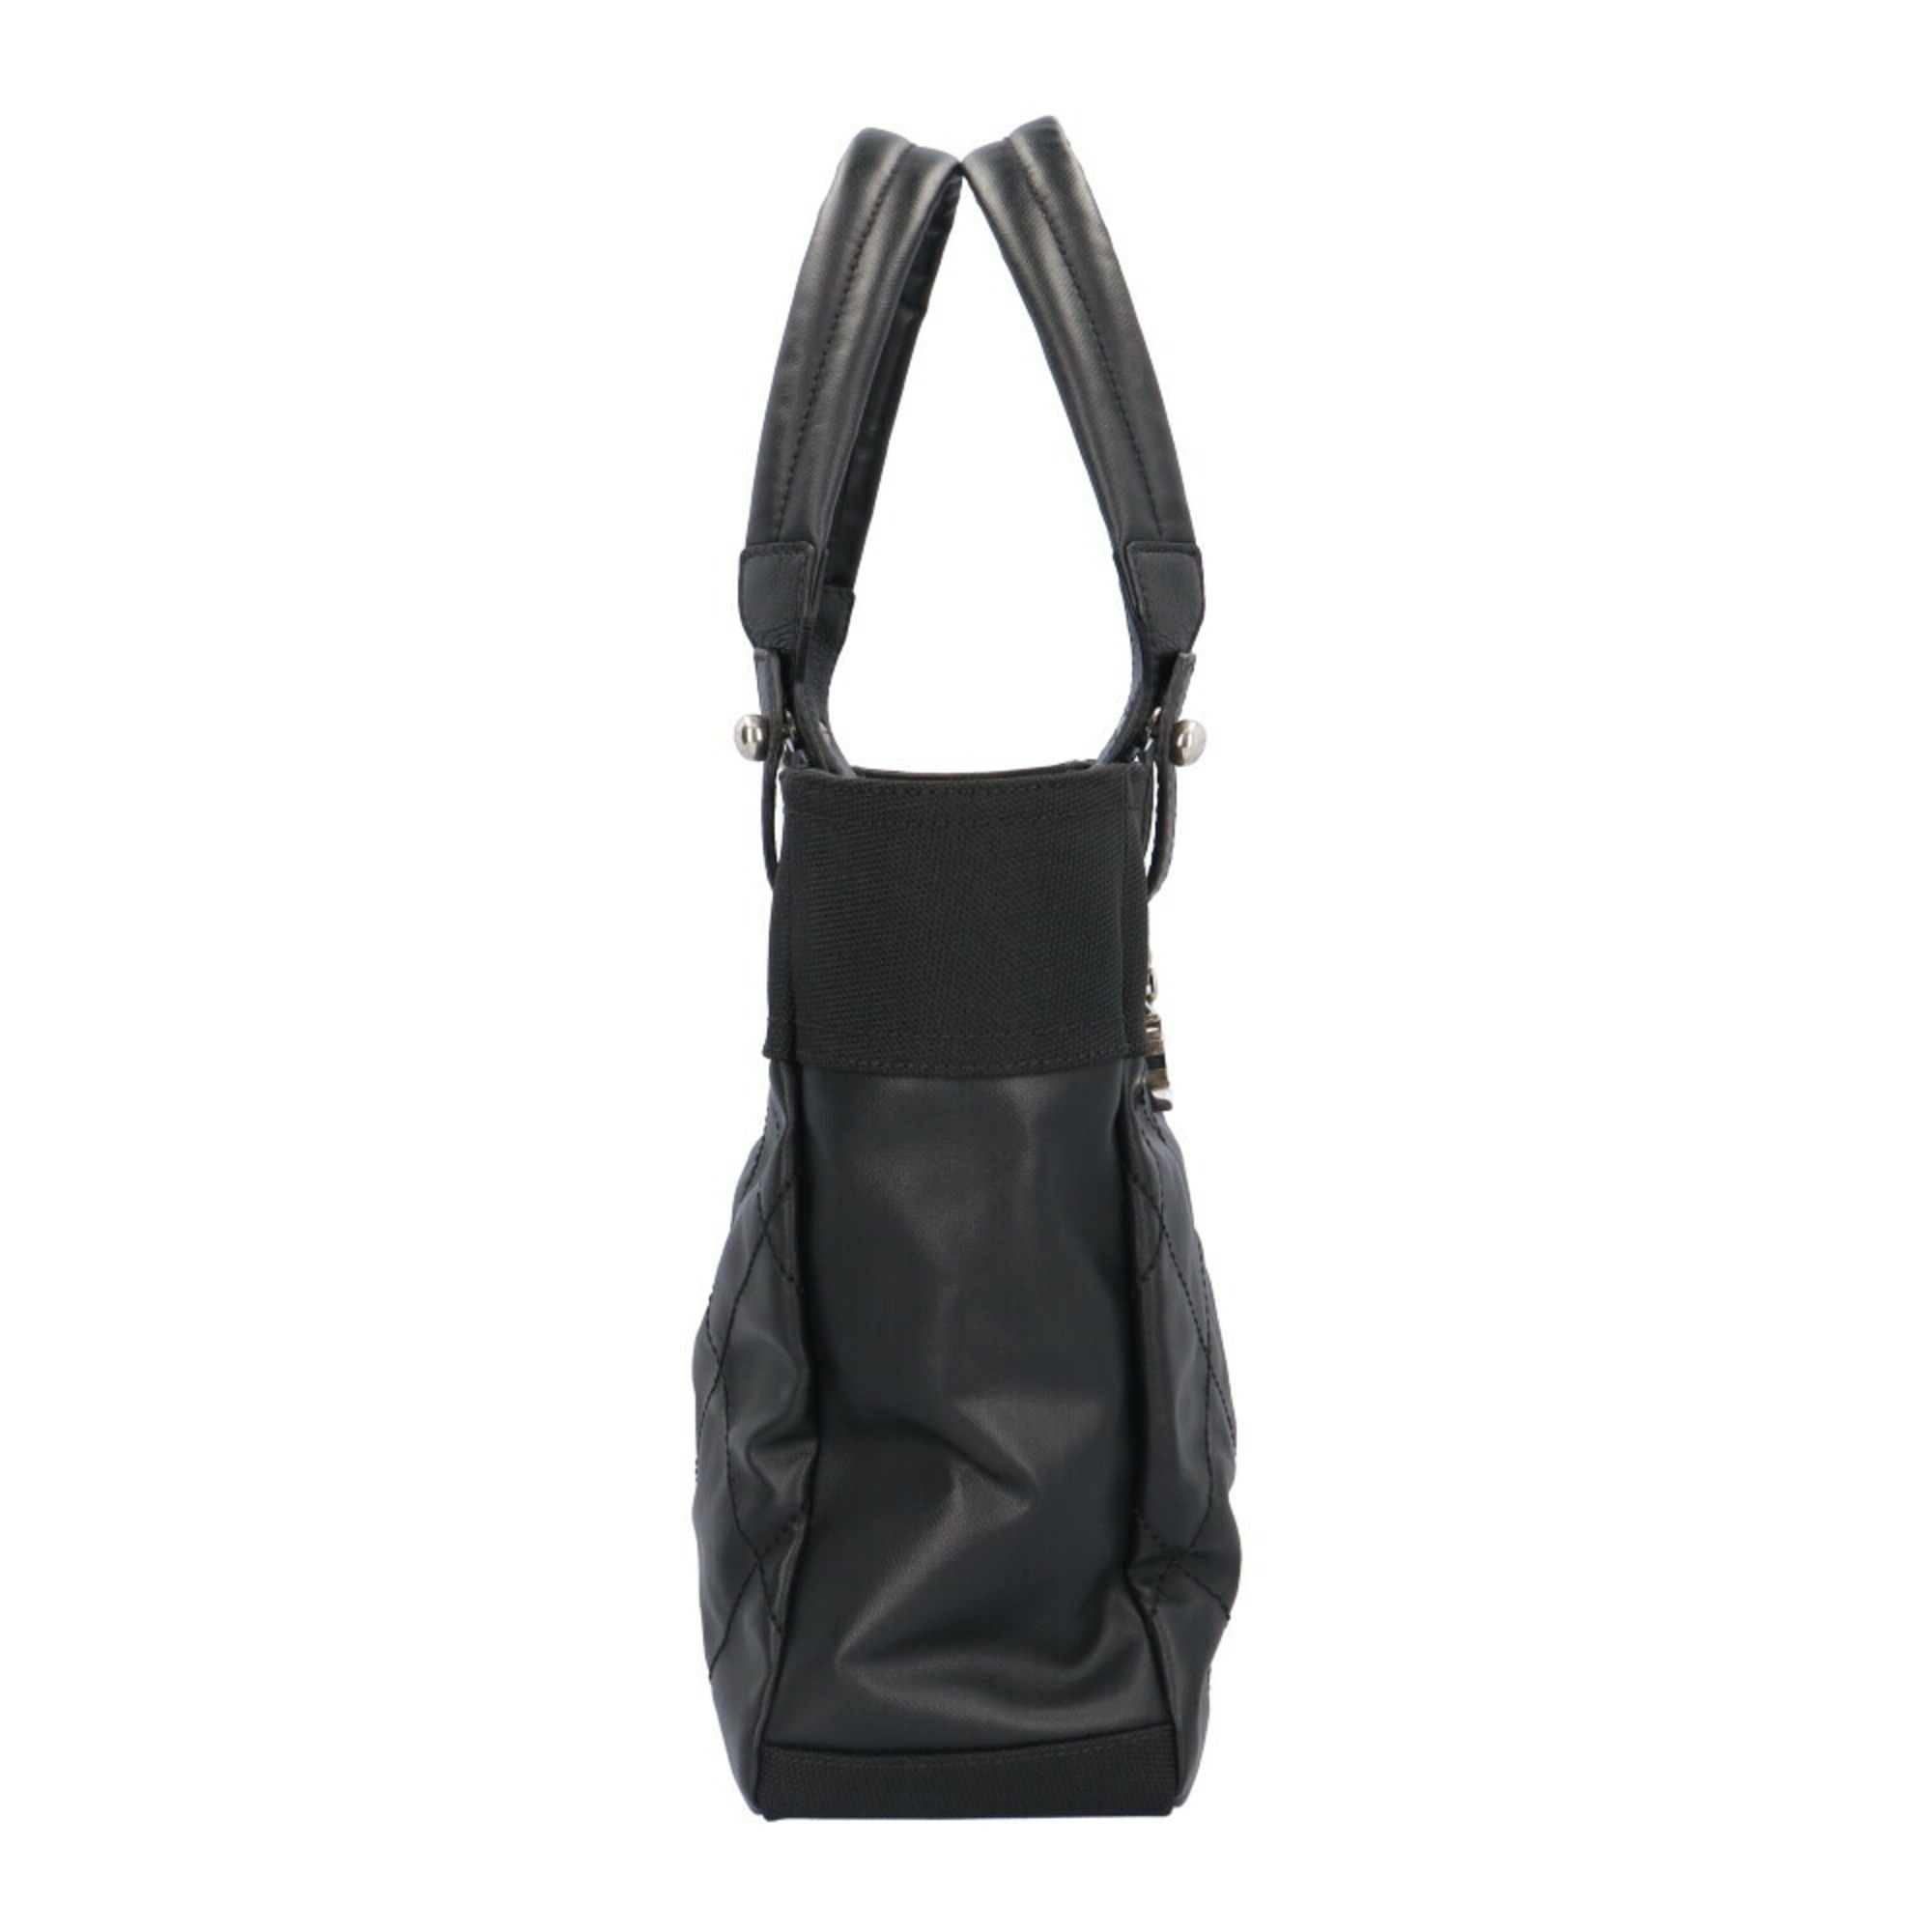 CHANEL Paris Biarritz PM Handbag Chanel PVC A34208 Black Women's